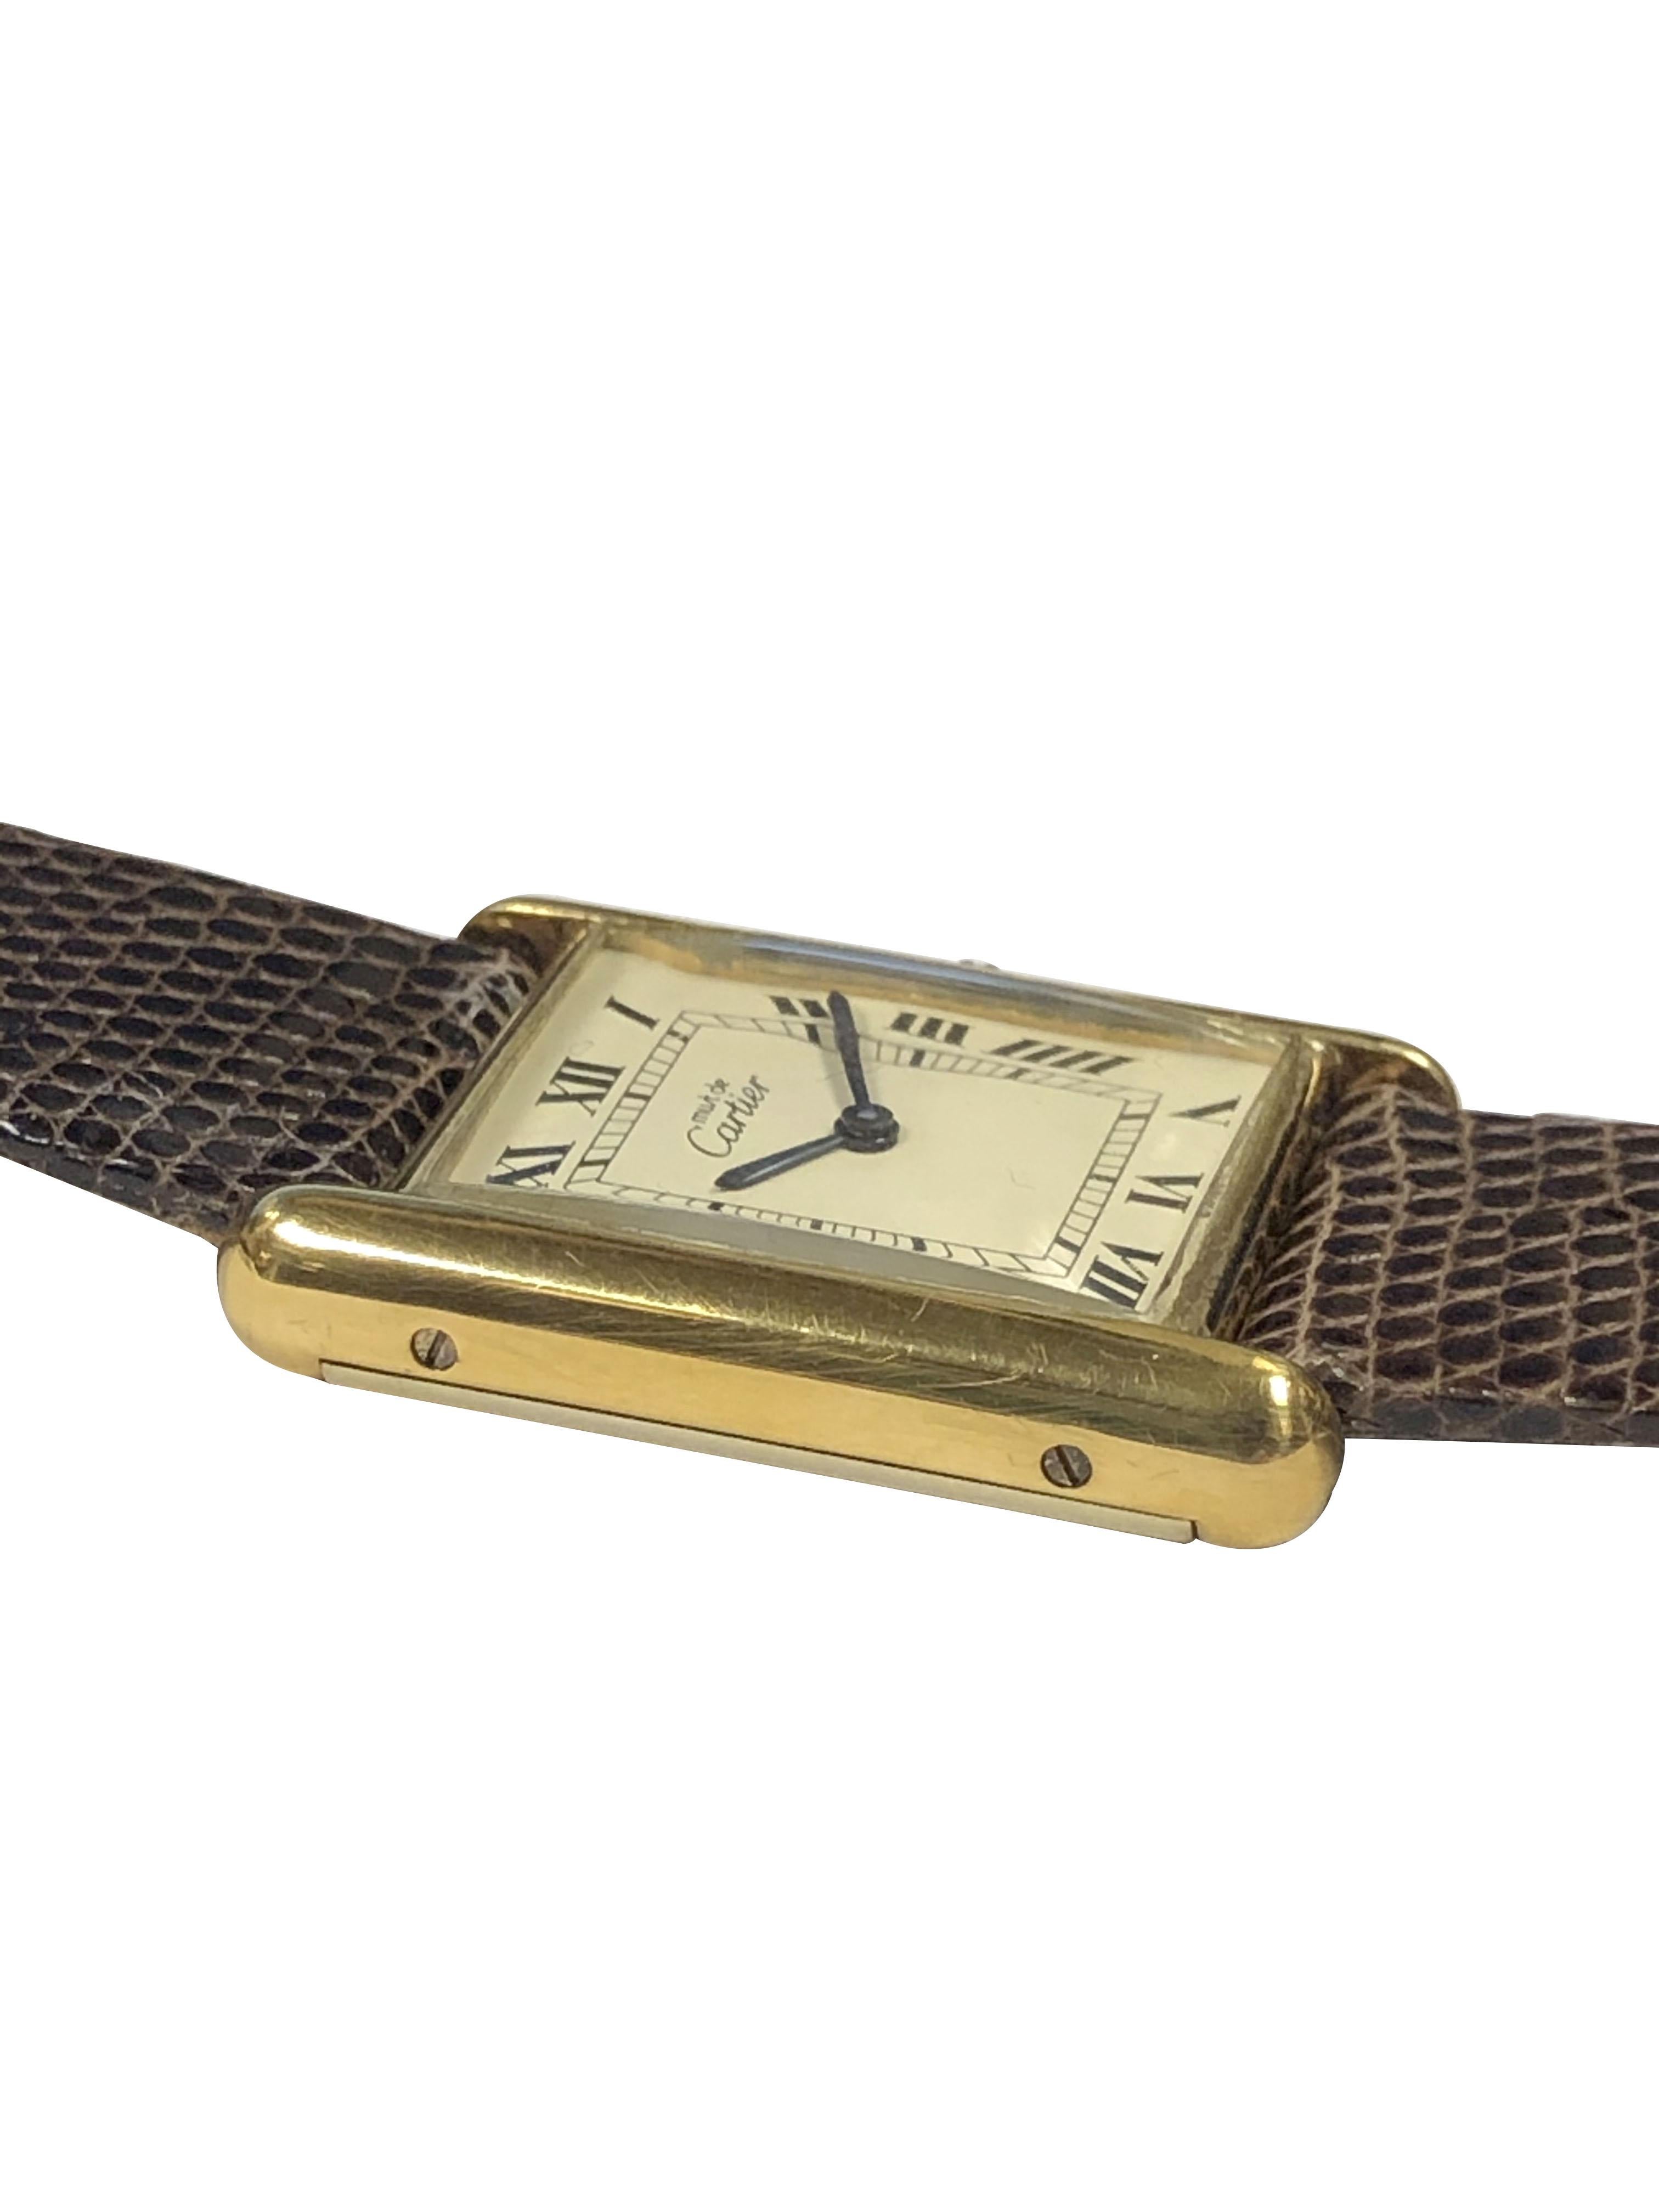 vermeil in gold watch